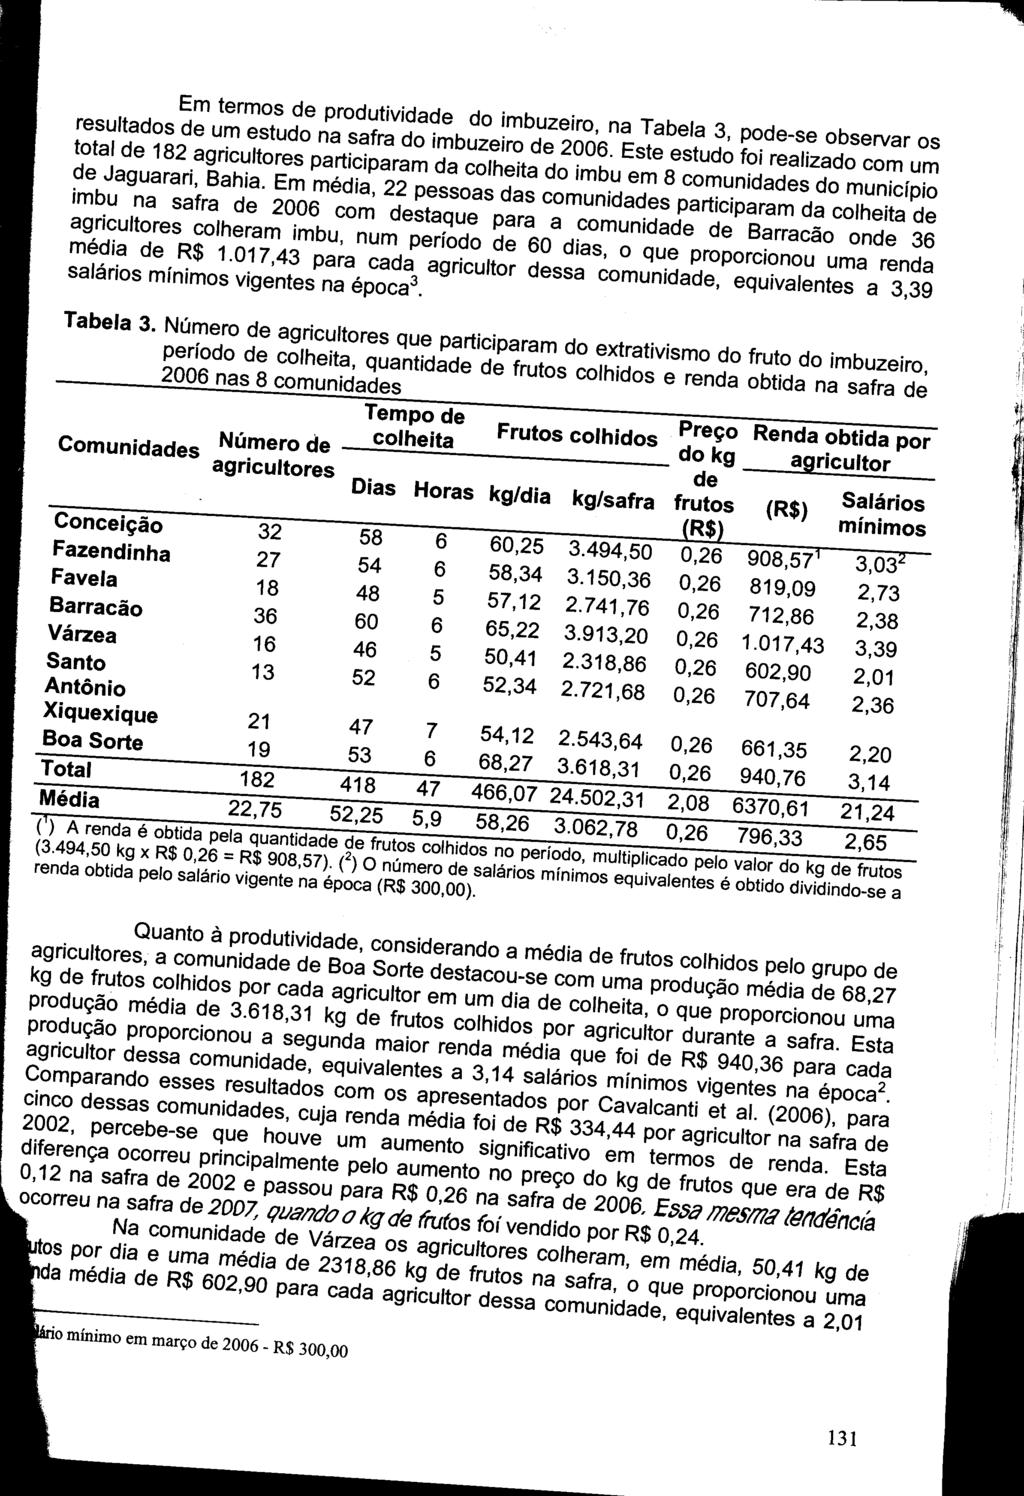 " Em termos de produtividade do imbuzeiro, na Tabela 3, pode-se observar os resultados de um estudo na safra do imbuzeiro de 2006.